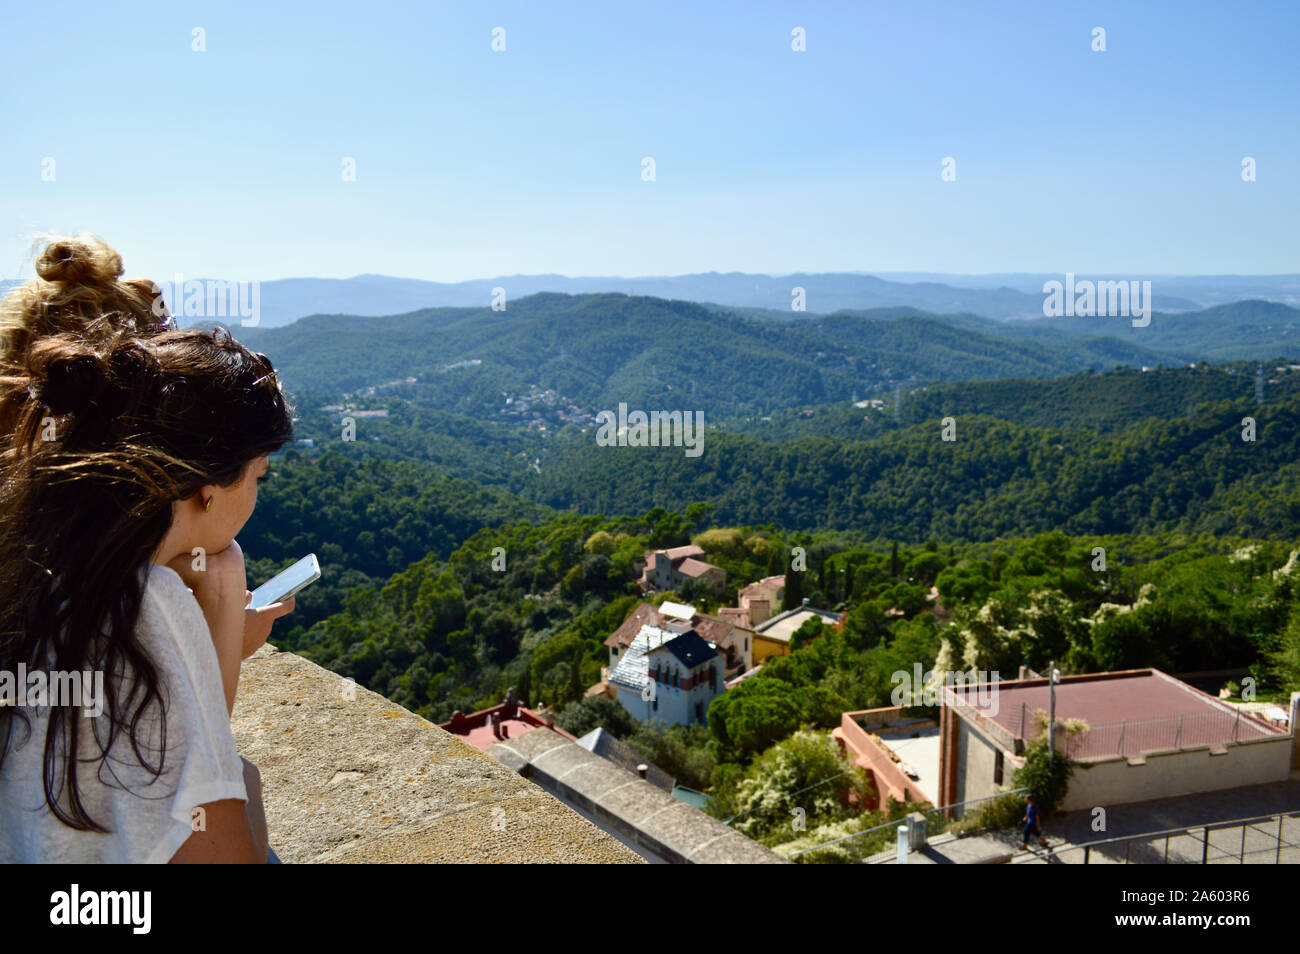 A young girl viewing the Serra de Collserola mountain range at Tibidabo in Barcelona, Spain Stock Photo